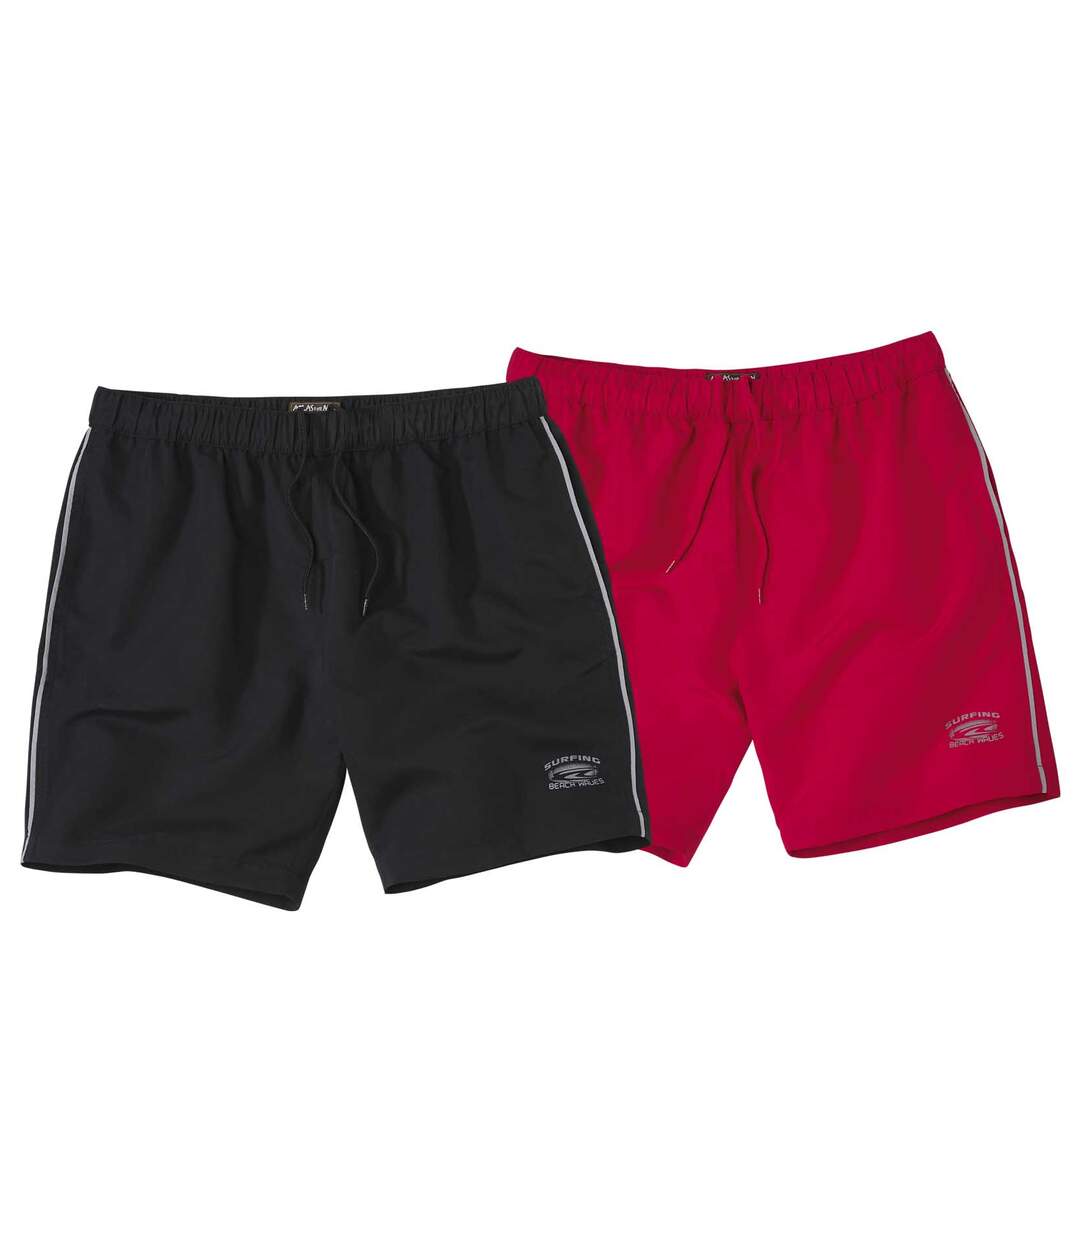 Pack of 2 Men's Swim Shorts - Black Red Atlas For Men